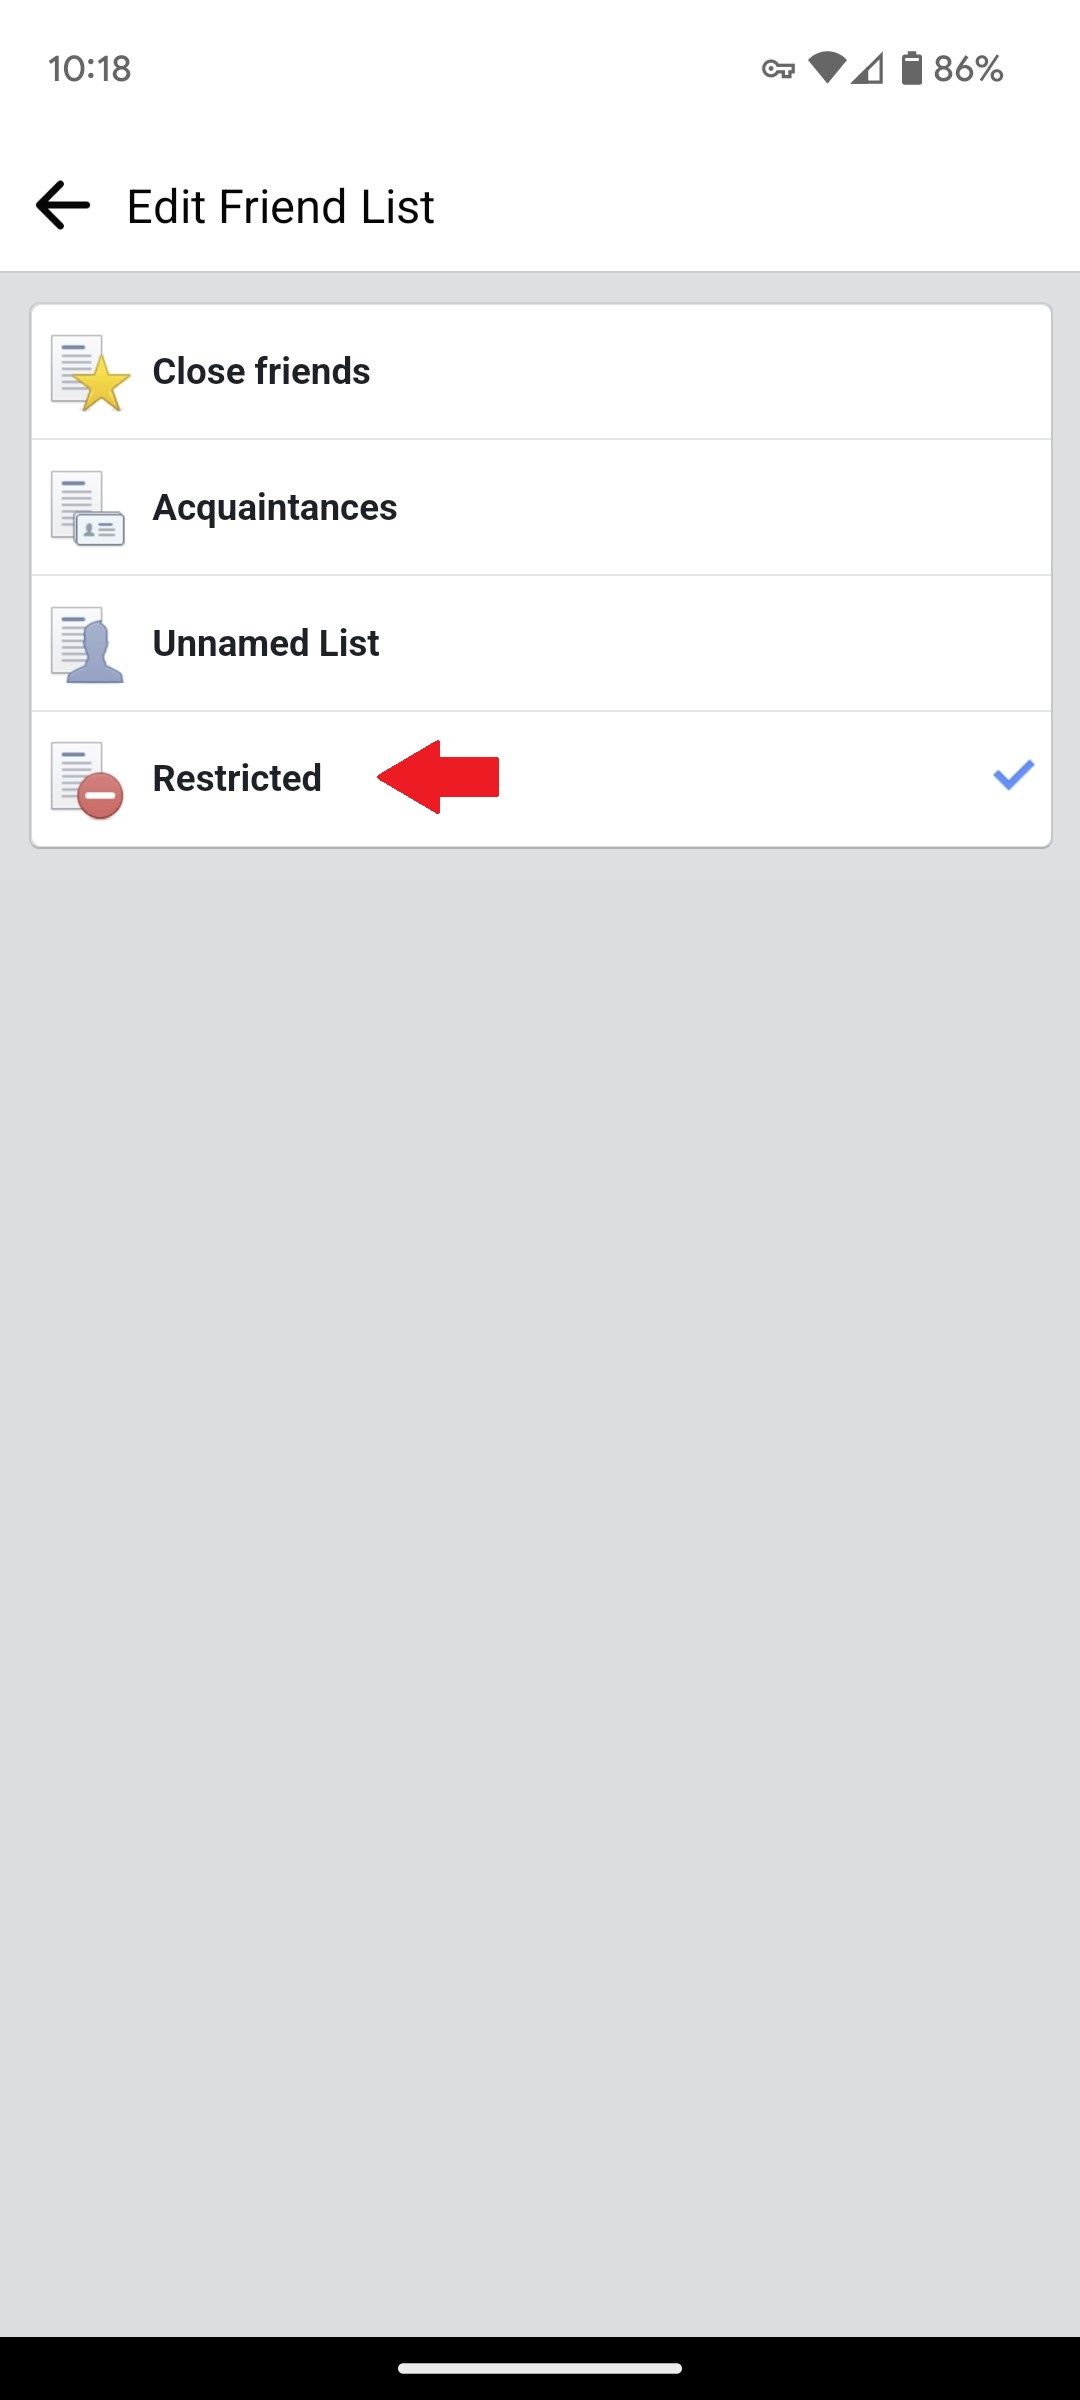 O menu Editar lista de amigos no aplicativo móvel do Facebook com uma seta vermelha apontando para a opção Restrito.